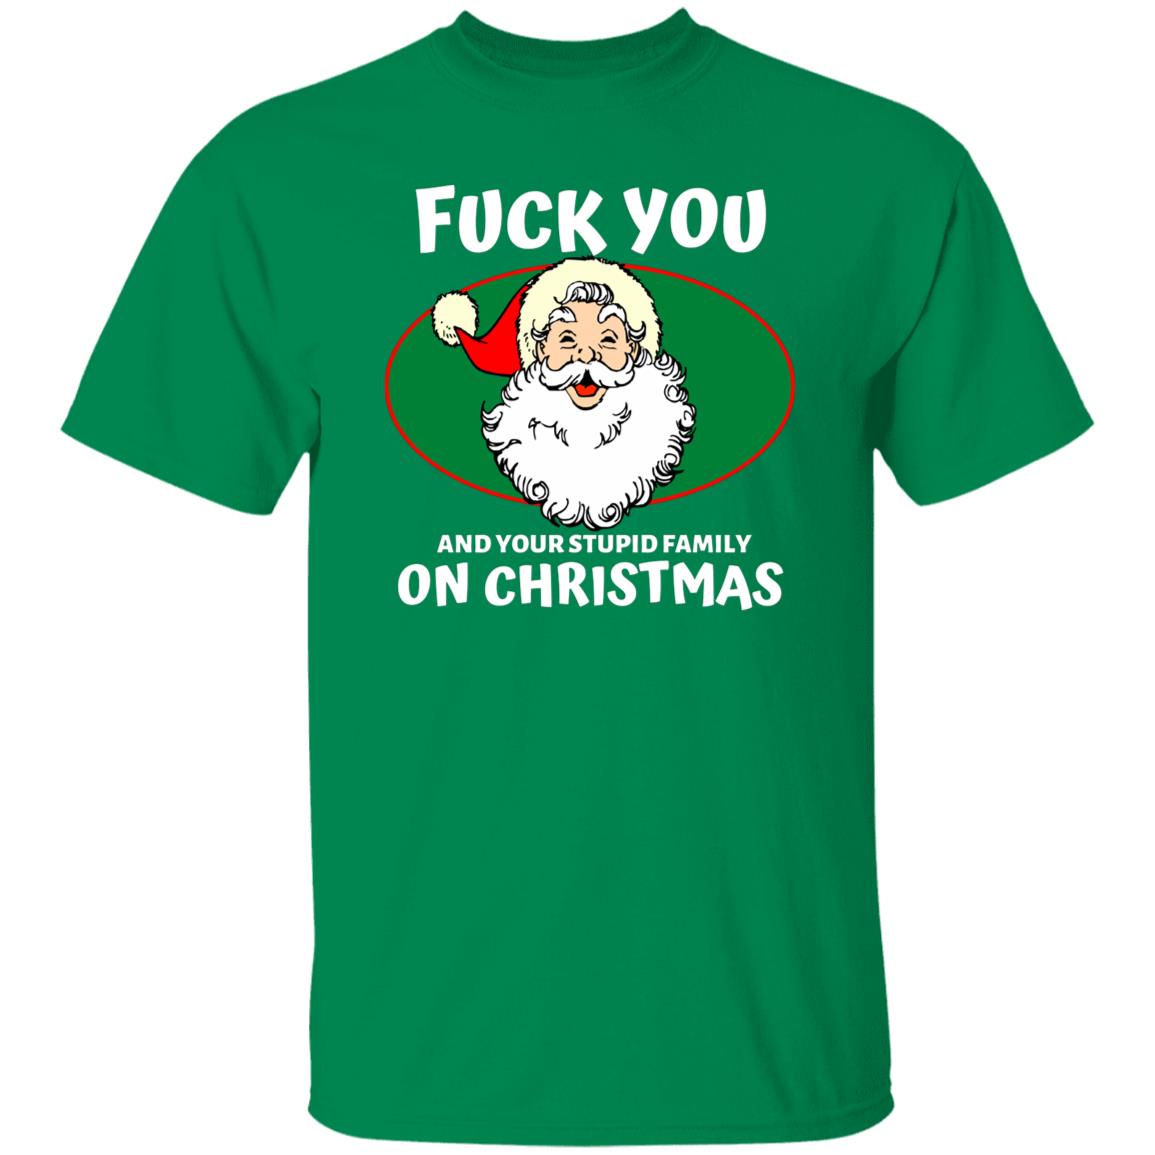 Bad Santa Say FU#K You Christmas T-shirt, Offensive Christmas Holiday Shirt, Bad Santa Graphic Tee